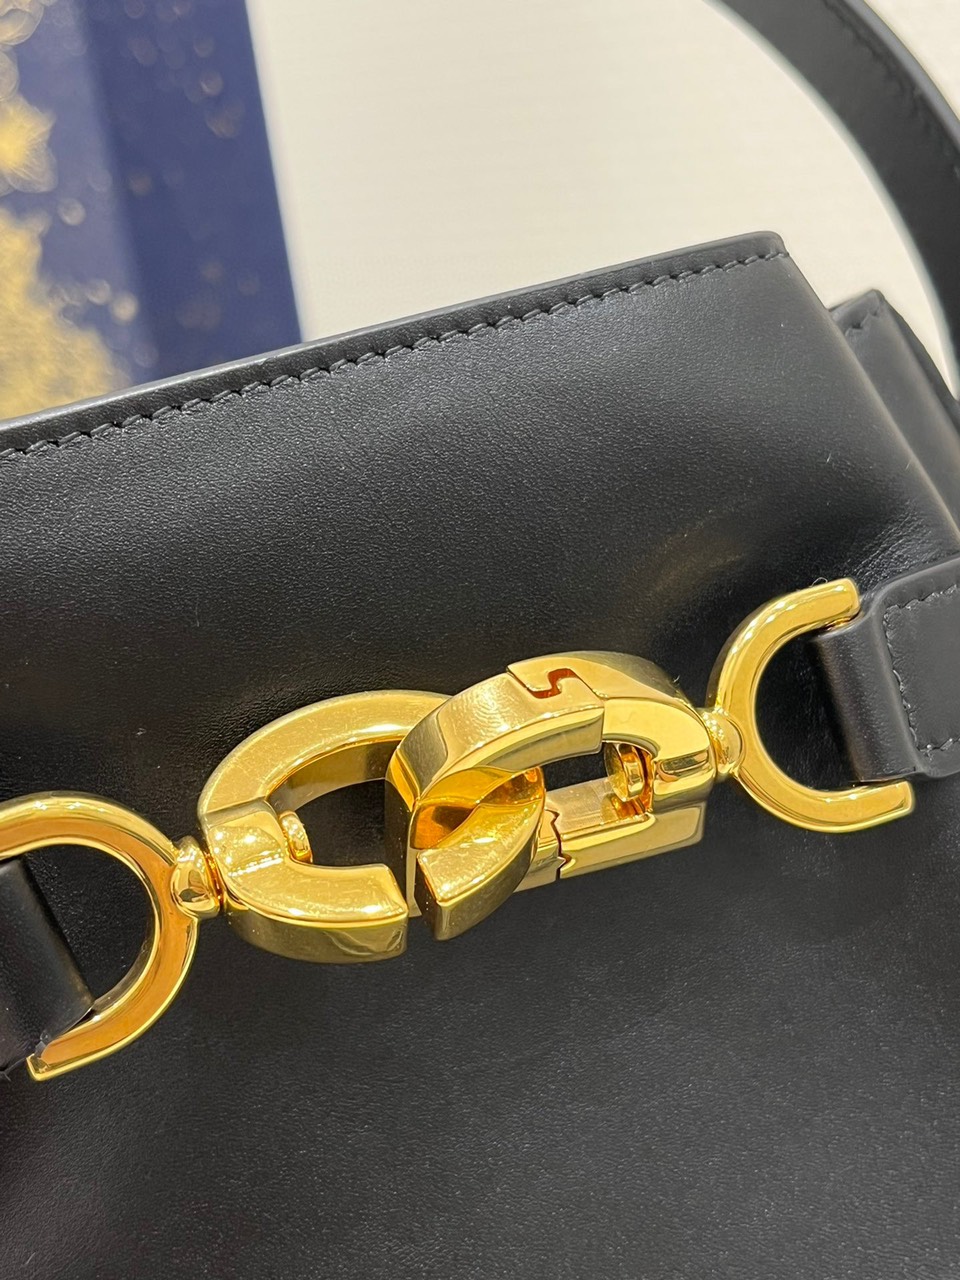 Túi Xách Dior oblique Bucket Lock Siêu Cấp Màu Đen Size 24cm